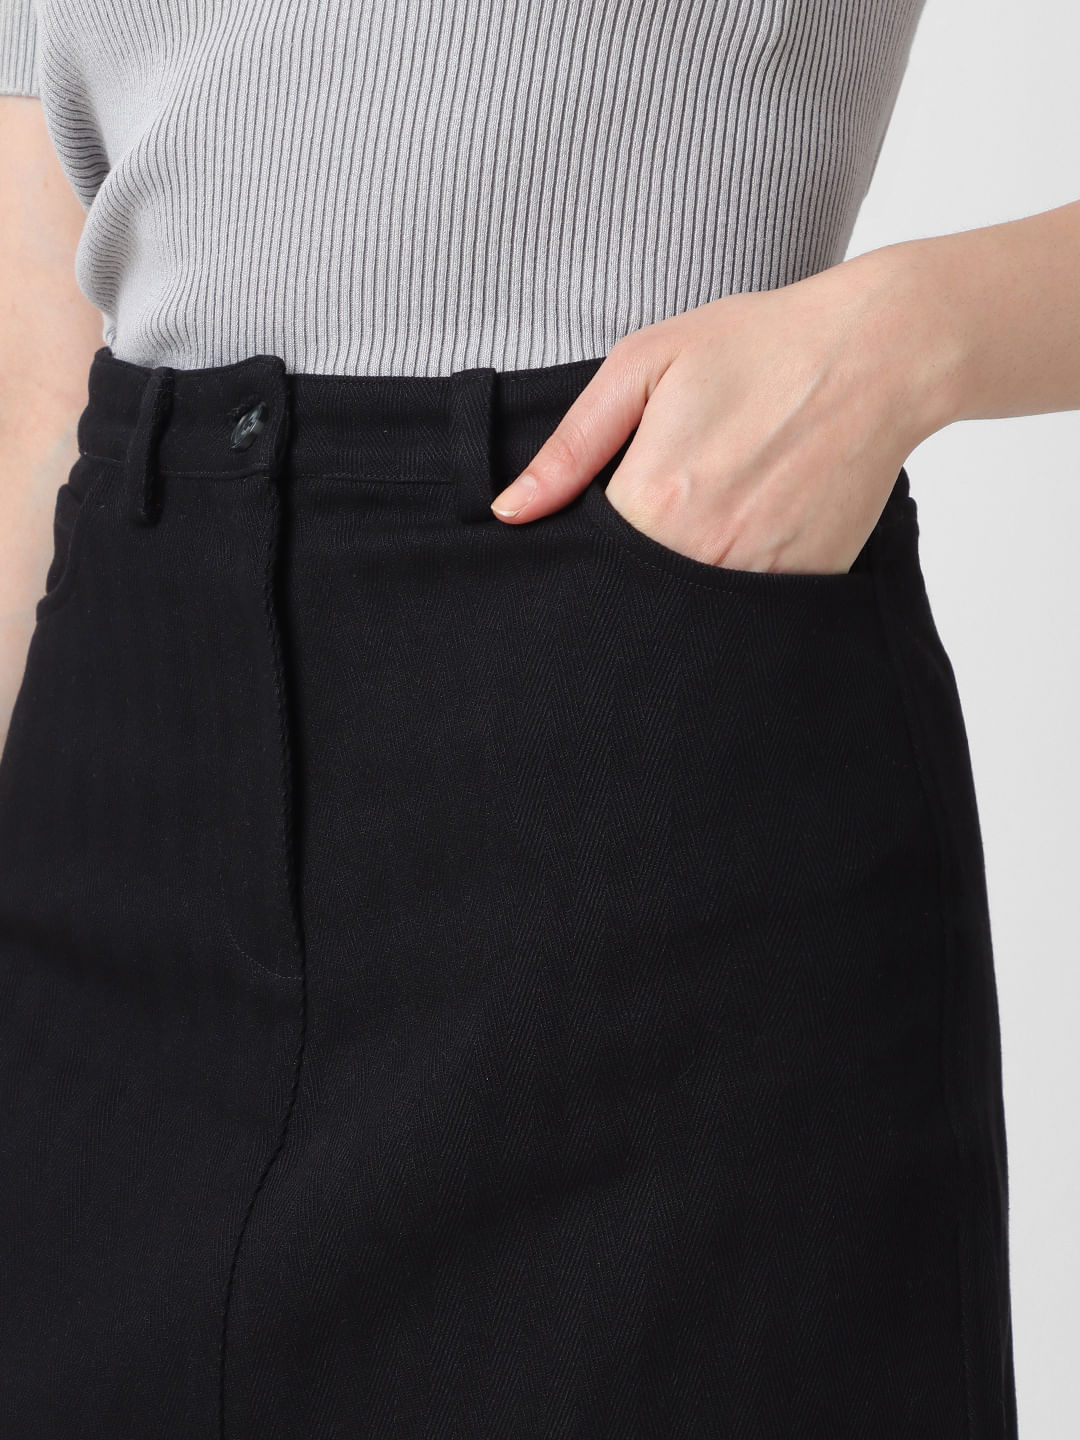 Denim by Adrift A-Line Short Denim Skirt in Black - Cotton Stretch, Knee  Length – Adrift Clothing